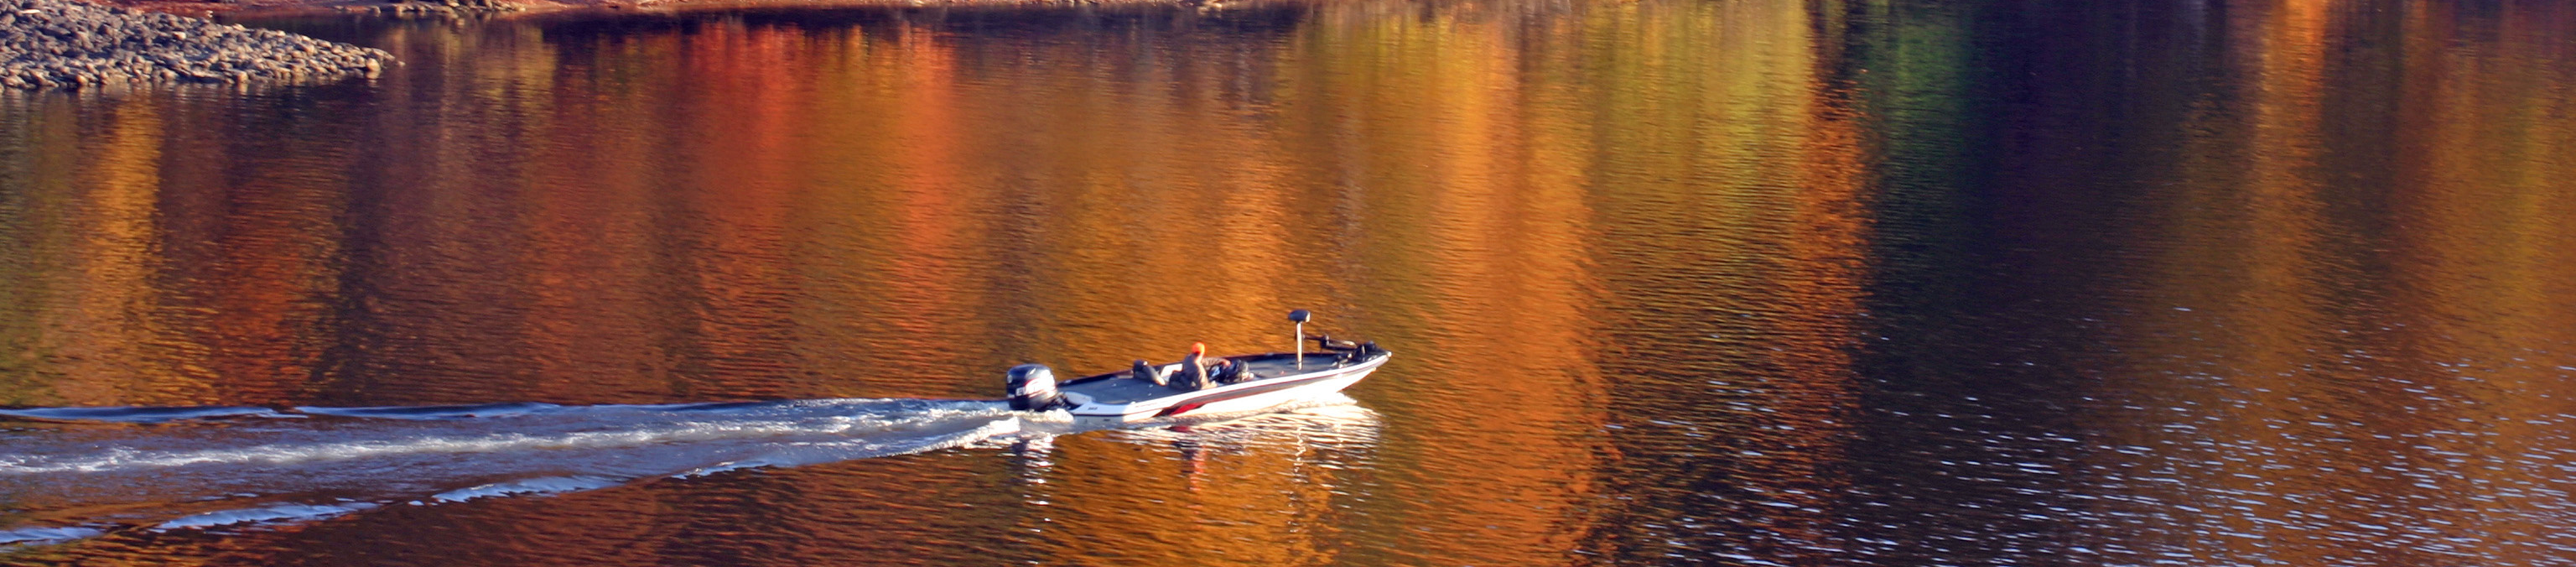 Fall Boat Fishing On Leech Lake